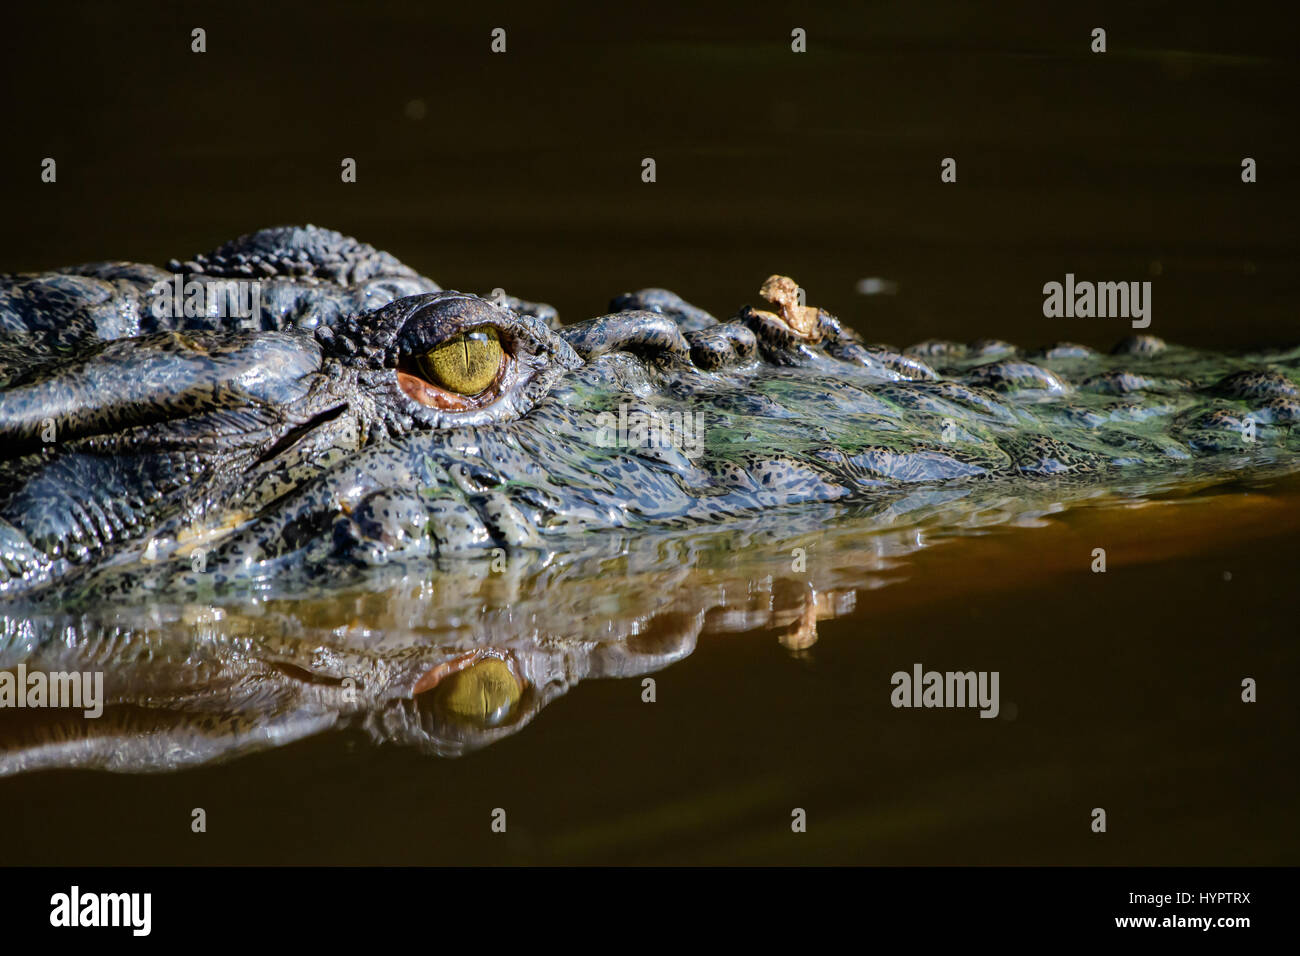 Eye of the crocodile Stock Photo